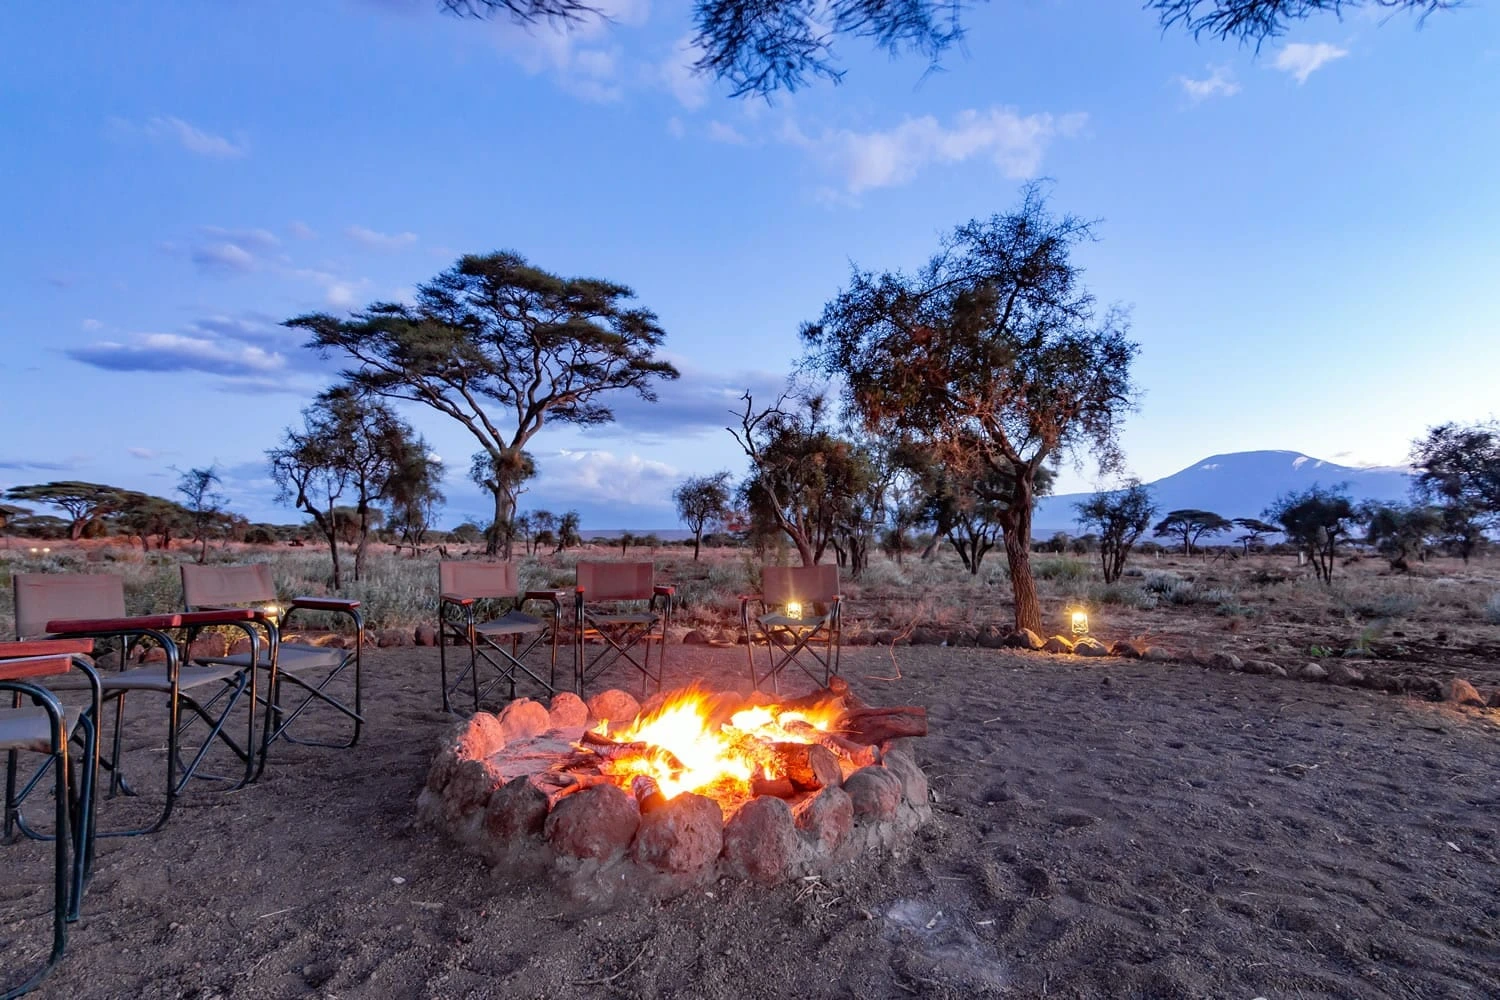 Safari Lodges in Amboseli Kenya - Camp fire at Kibo safari camp in Amboseli